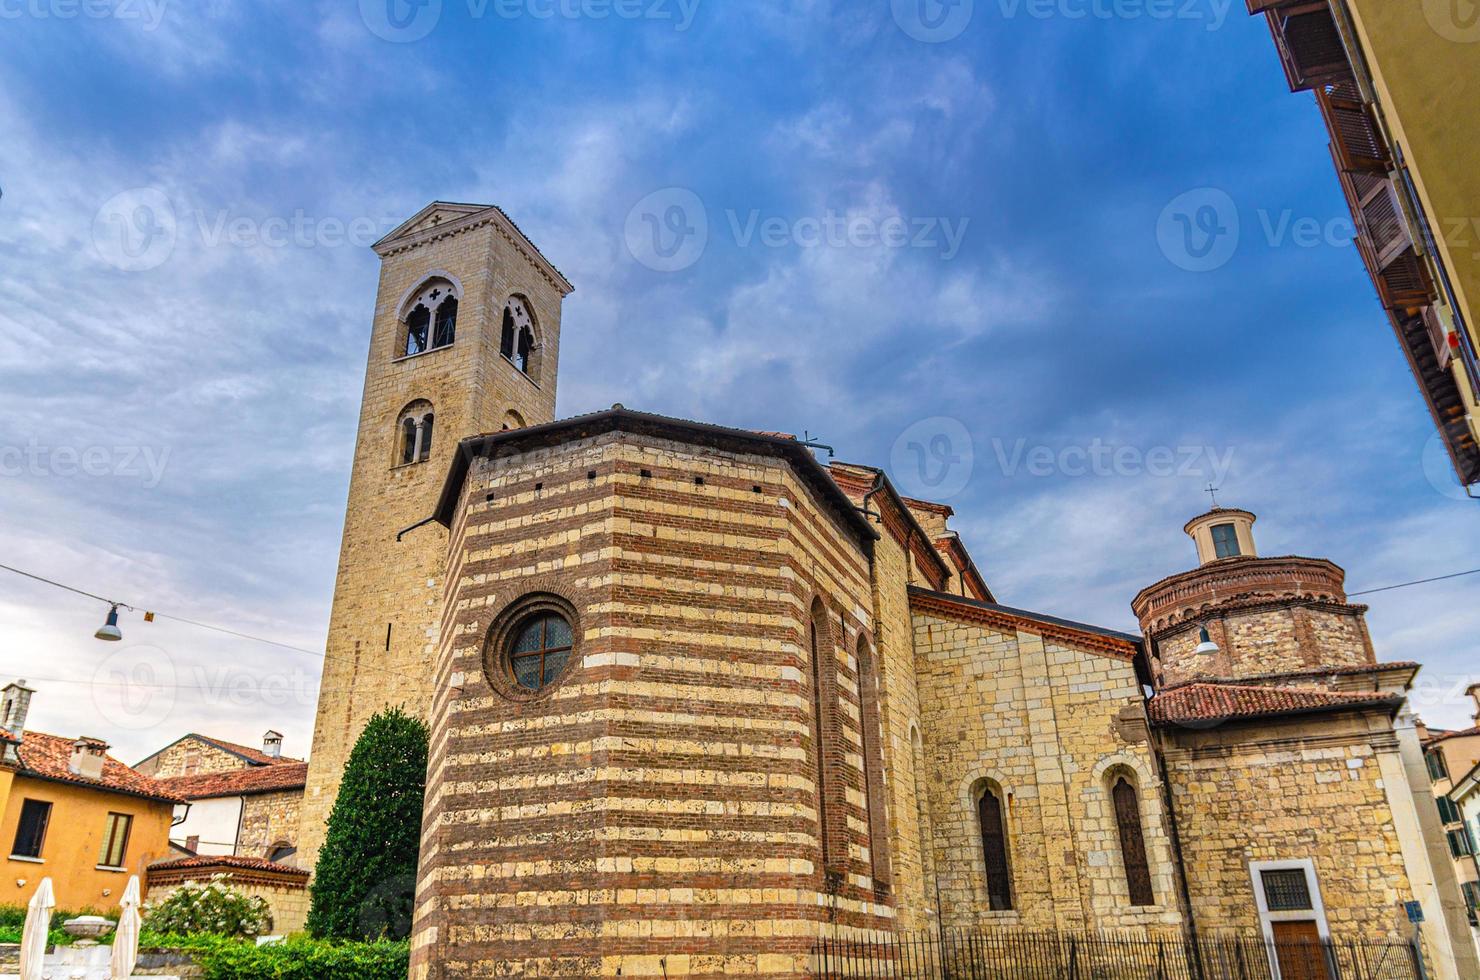 chiesa di san francesco d'assisi romersk-katolska kyrkan byggnad i romansk gotisk stil foto